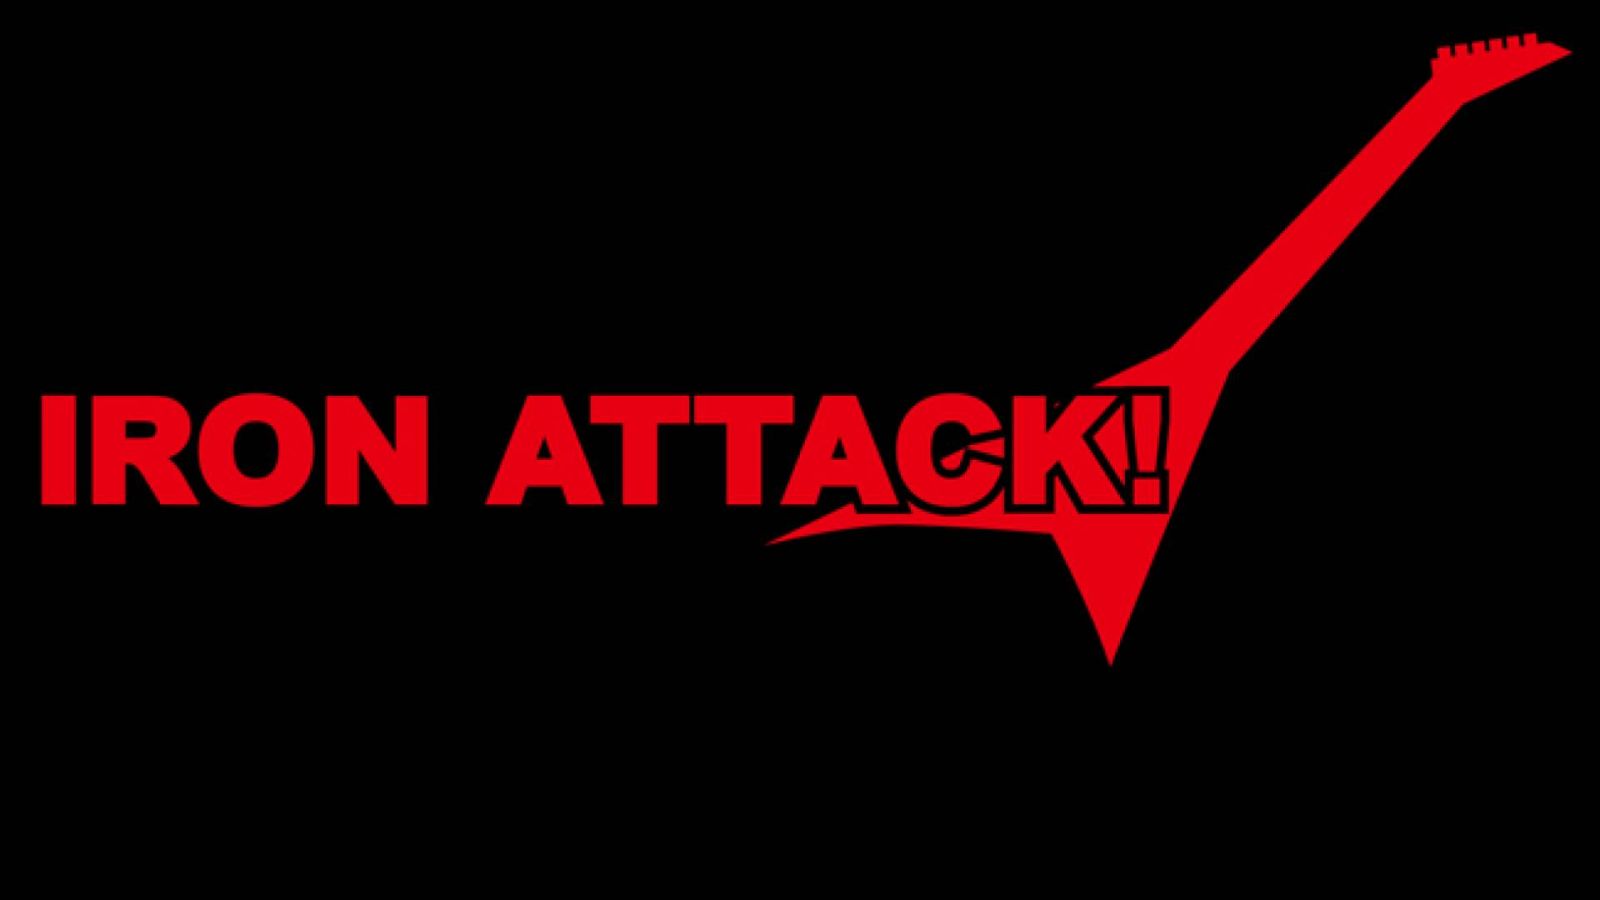 Ein neues Album von IRON ATTACK! © 2015 IRON ATTACK! All rights reserved.